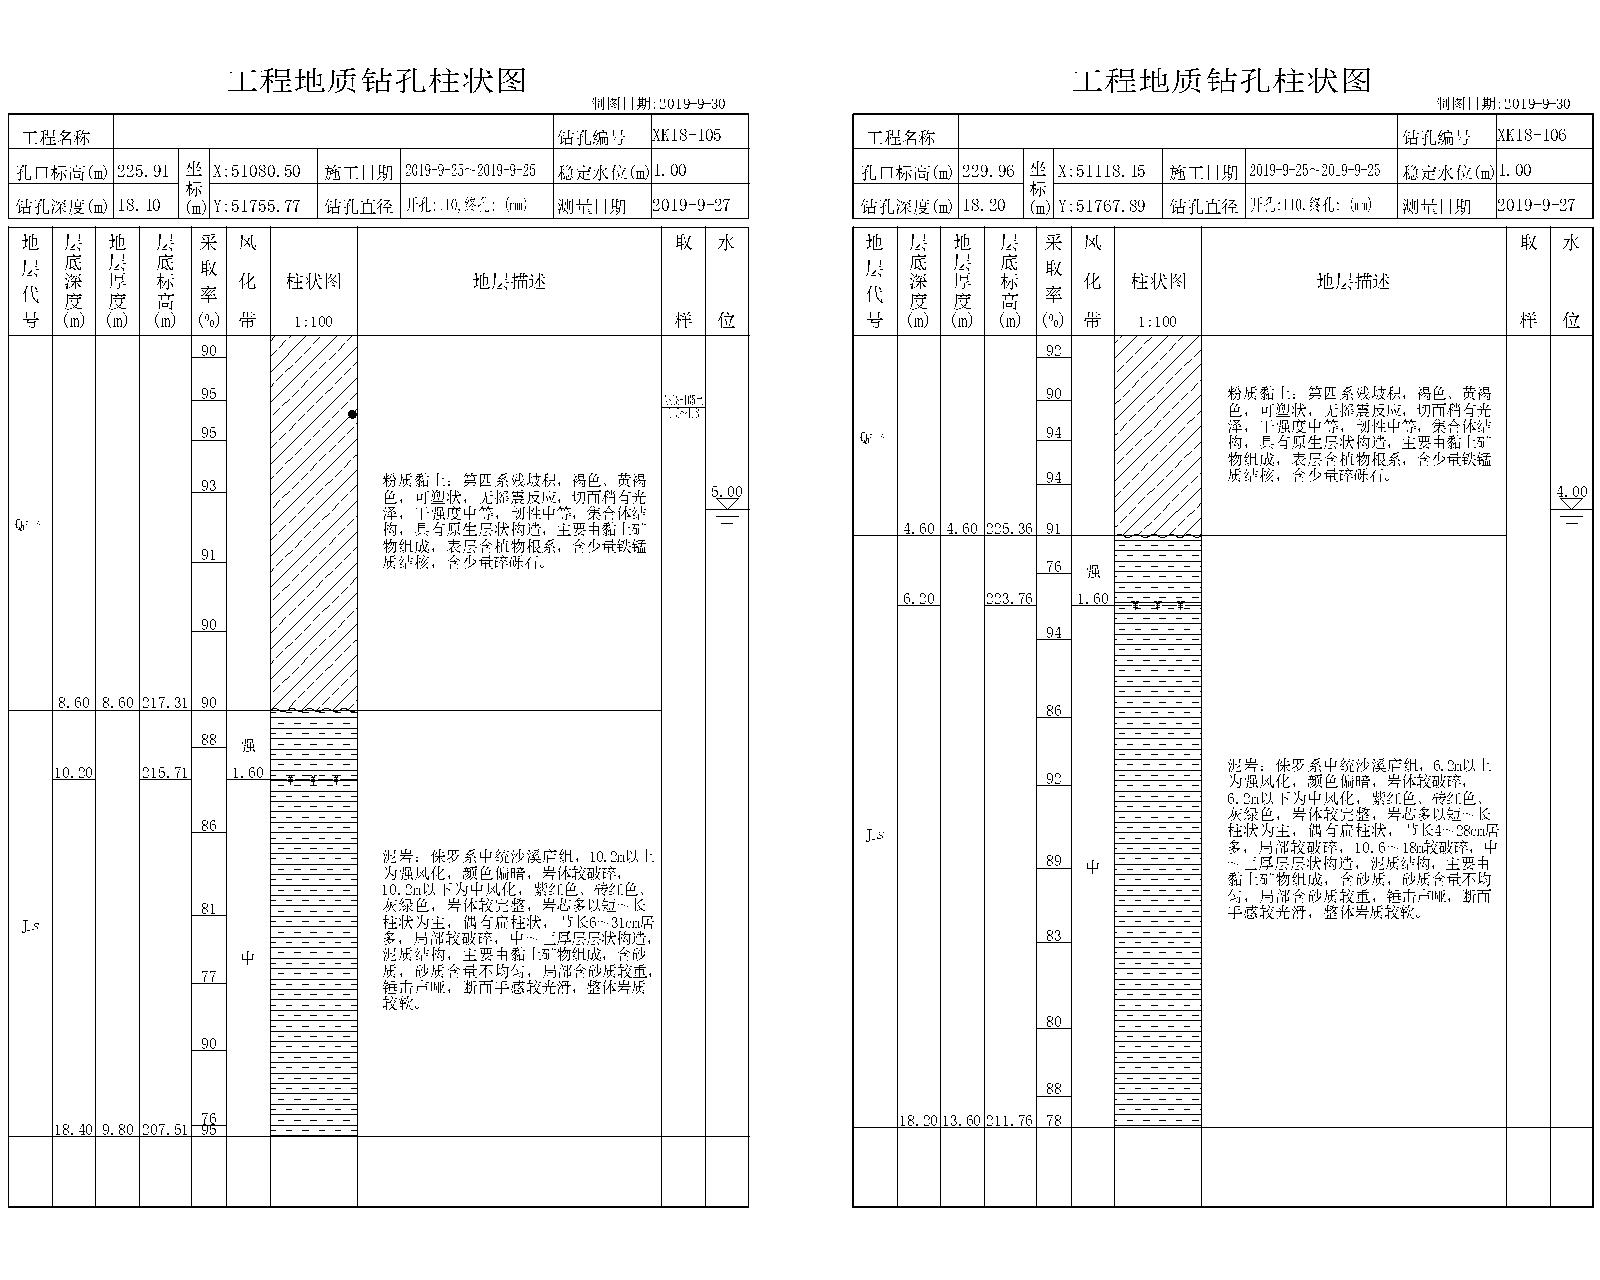 [重庆]隧道工程地质详细勘察报告(图表丰富)-工程地质钻孔柱状图